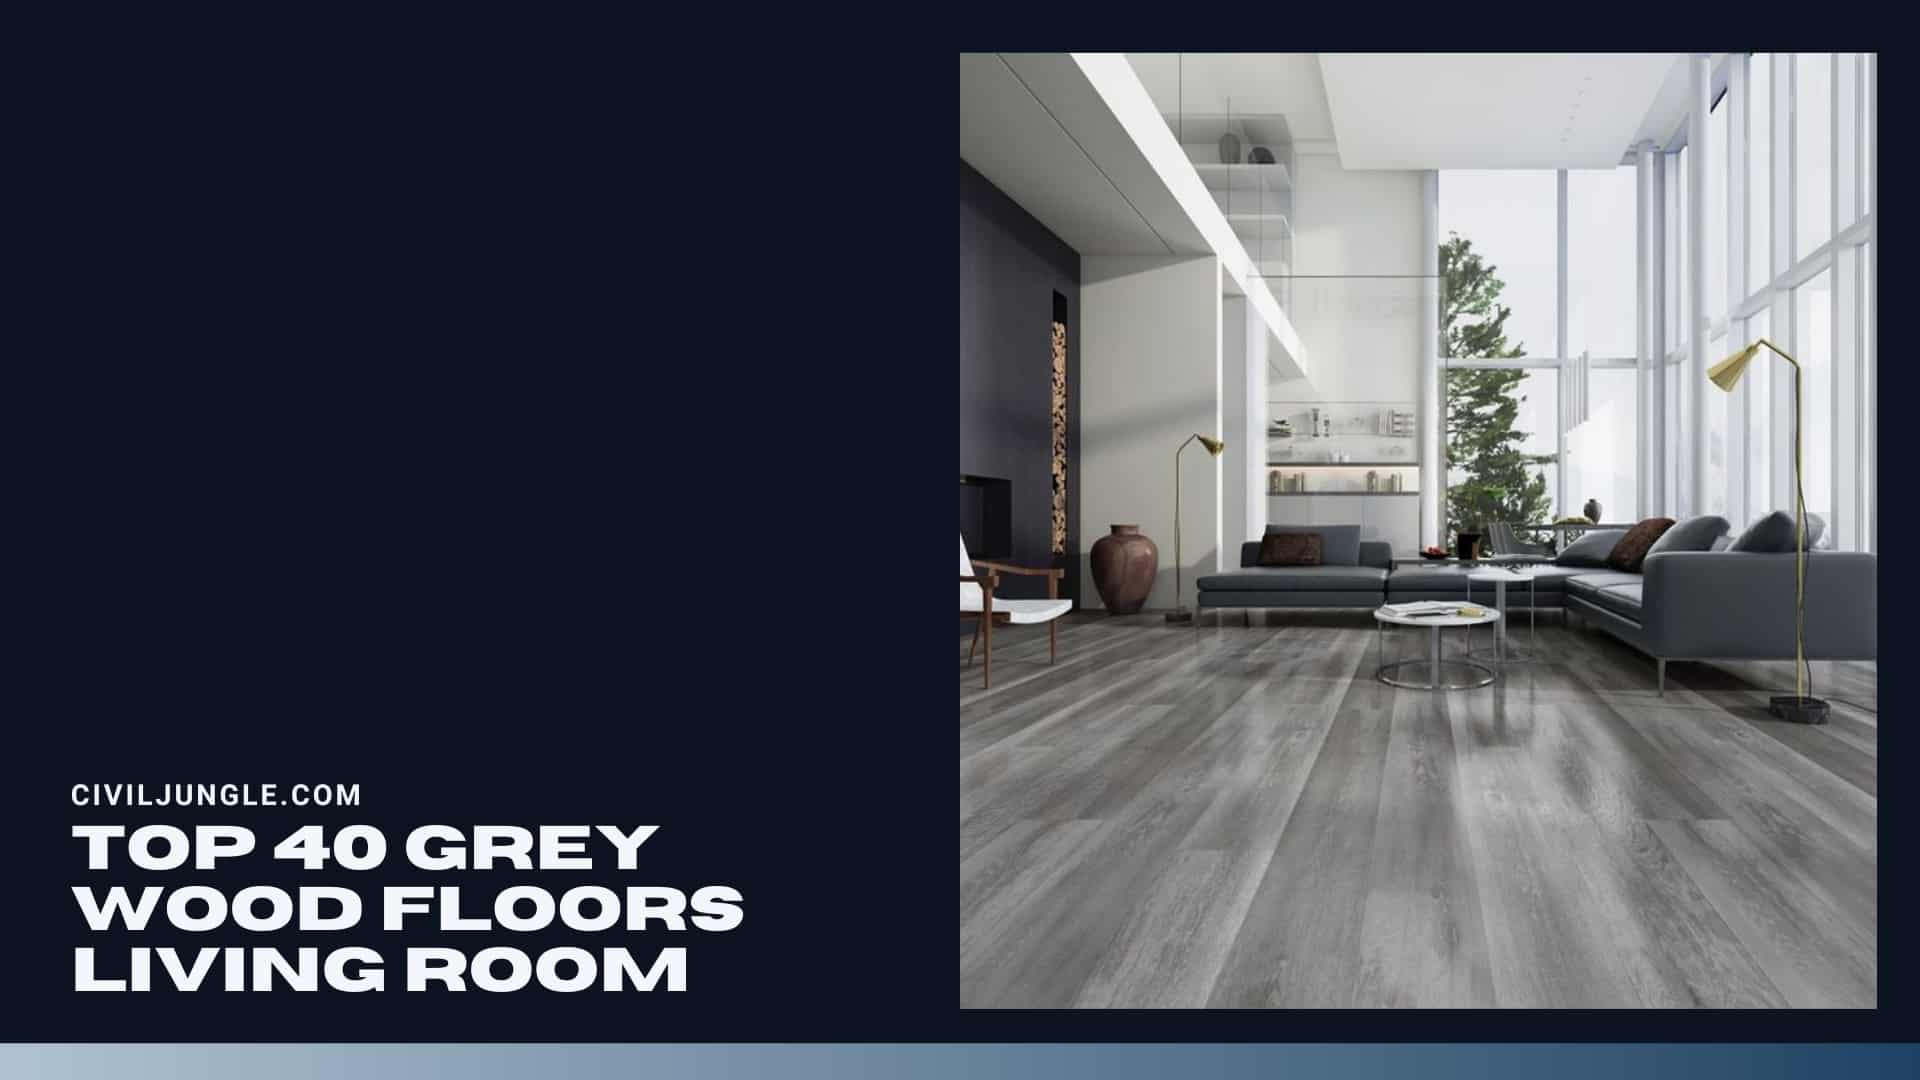 Top 40 Grey Wood Floors Living Room